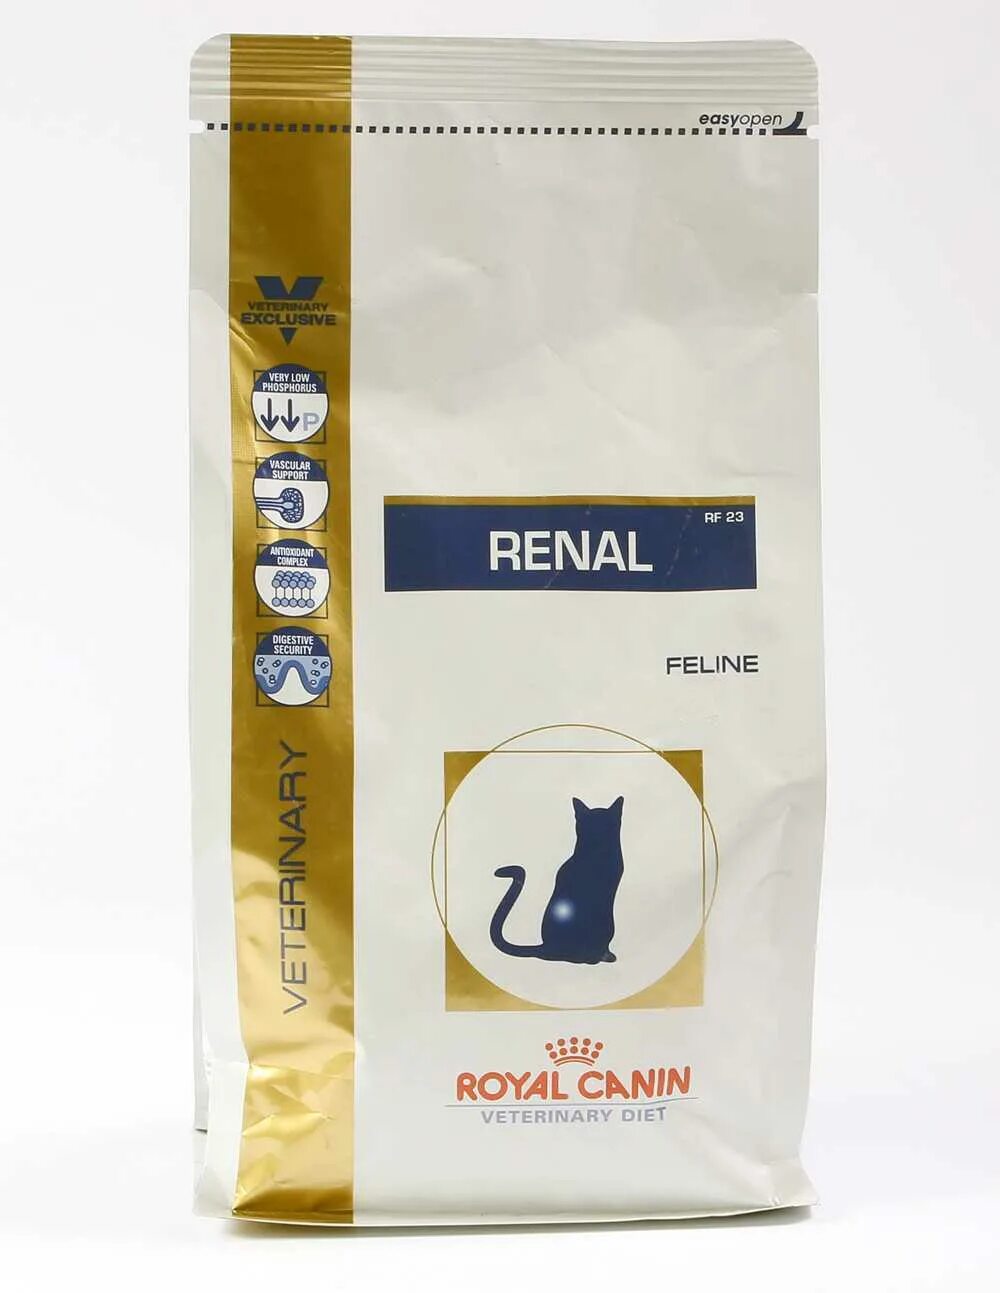 Роял канин ренал для кошек купить. Роял Канин Ренал сухой. Royal Canin renal для кошек. Роял Канин Ренал для кошек линейка. Ренал Фелин для кошек Роял Канин.